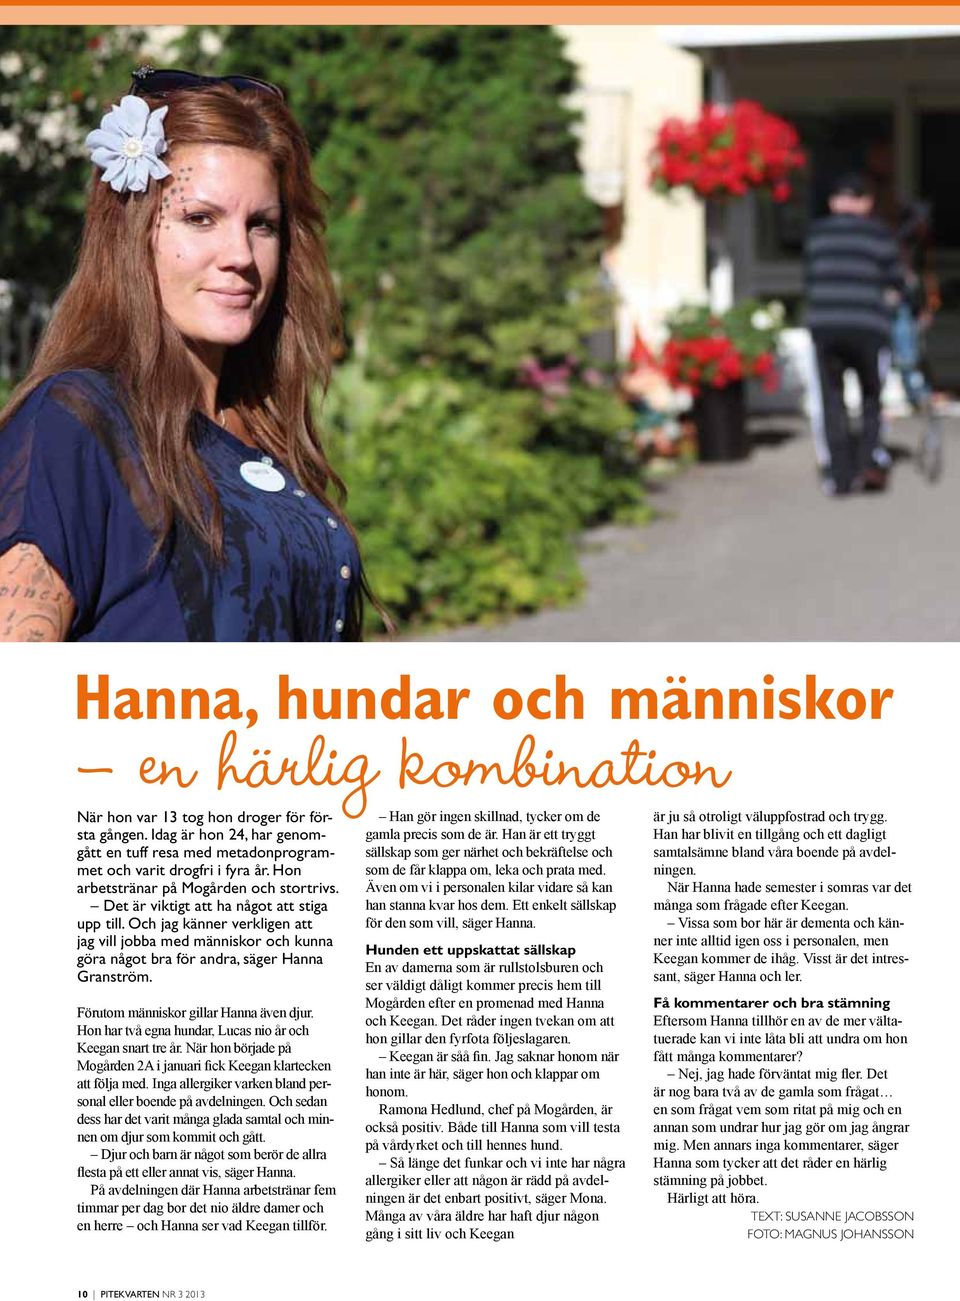 Och jag känner verkligen att jag vill jobba med människor och kunna göra något bra för andra, säger Hanna Granström. Förutom människor gillar Hanna även djur.